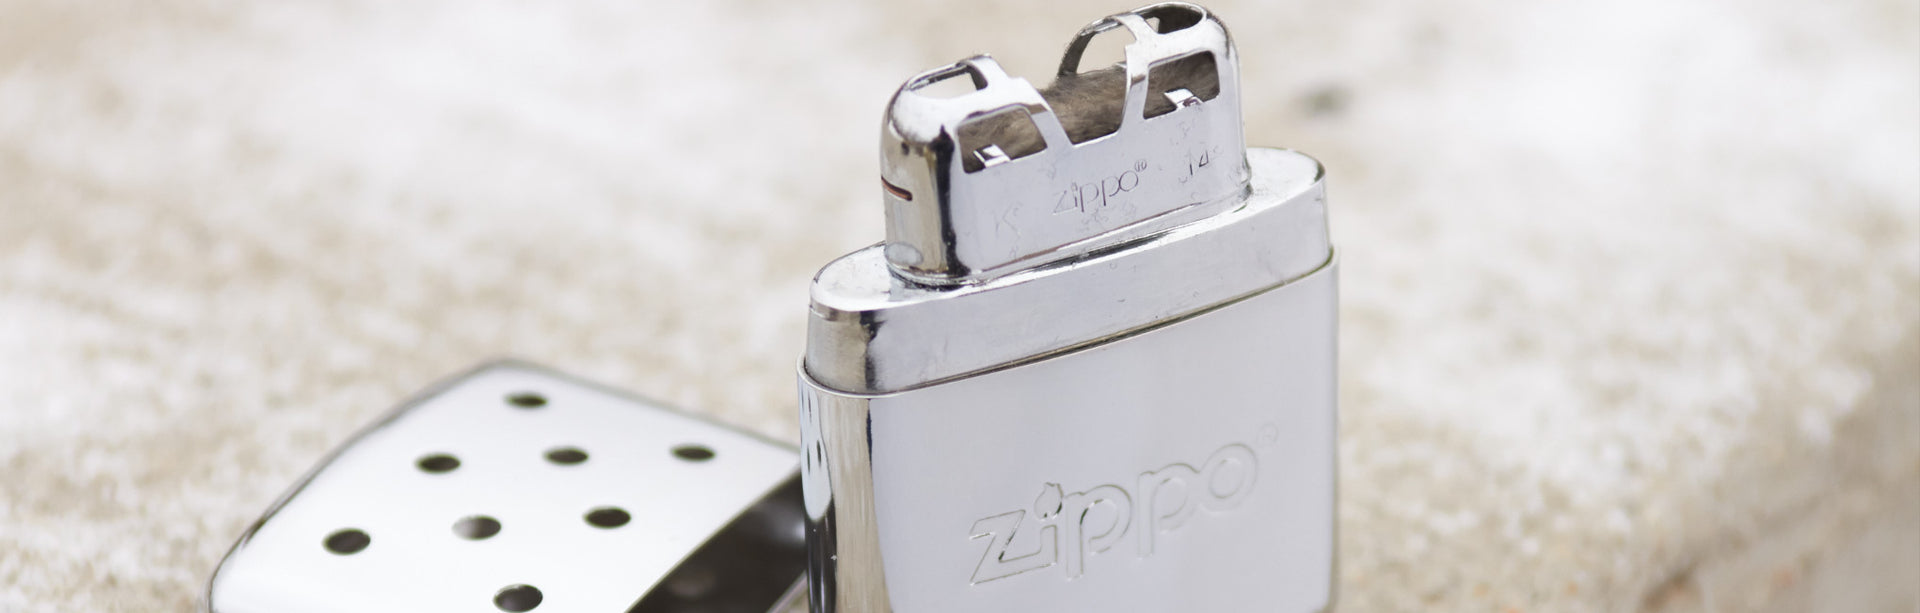 Zippo - Chauffe-mains à essence, Achat en ligne